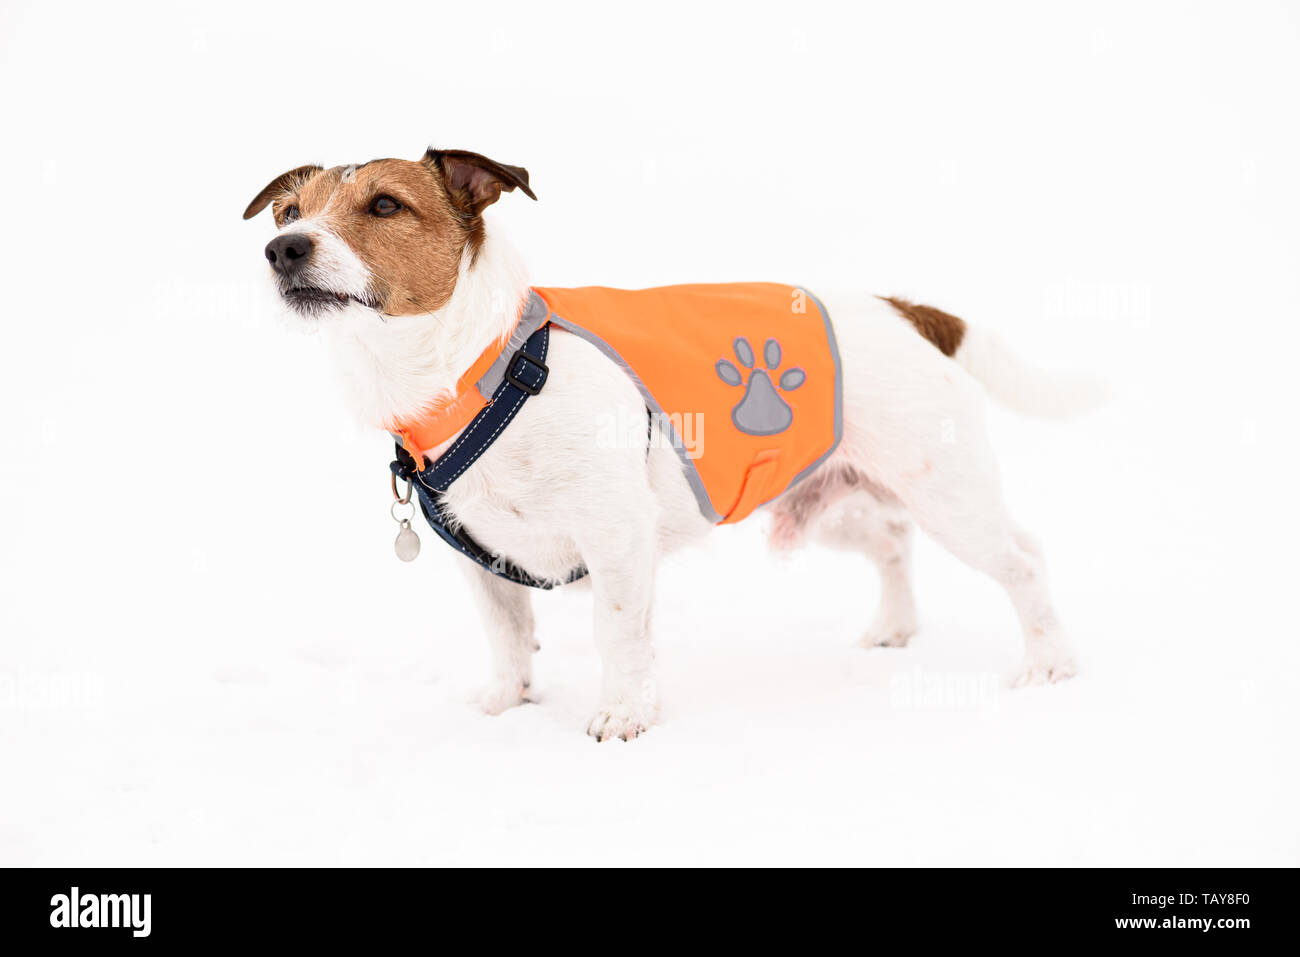 Perro Mascota llevaba chaleco reflectante de seguridad de pie sobre nieve blanca Foto de stock